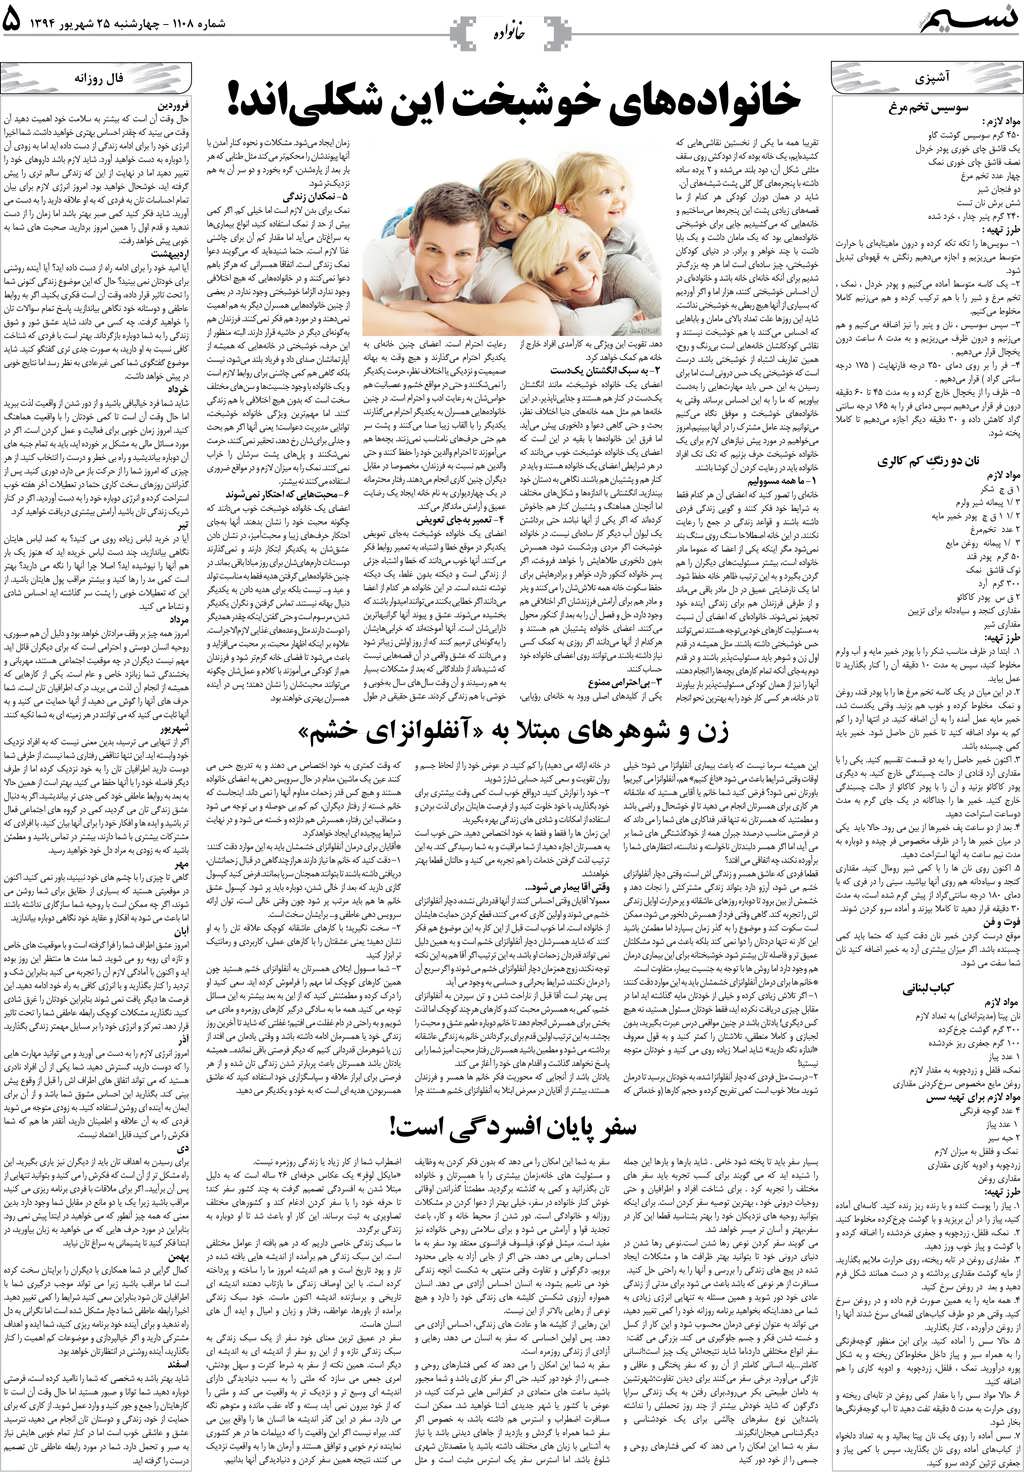 صفحه خانواده روزنامه نسیم شماره 1108